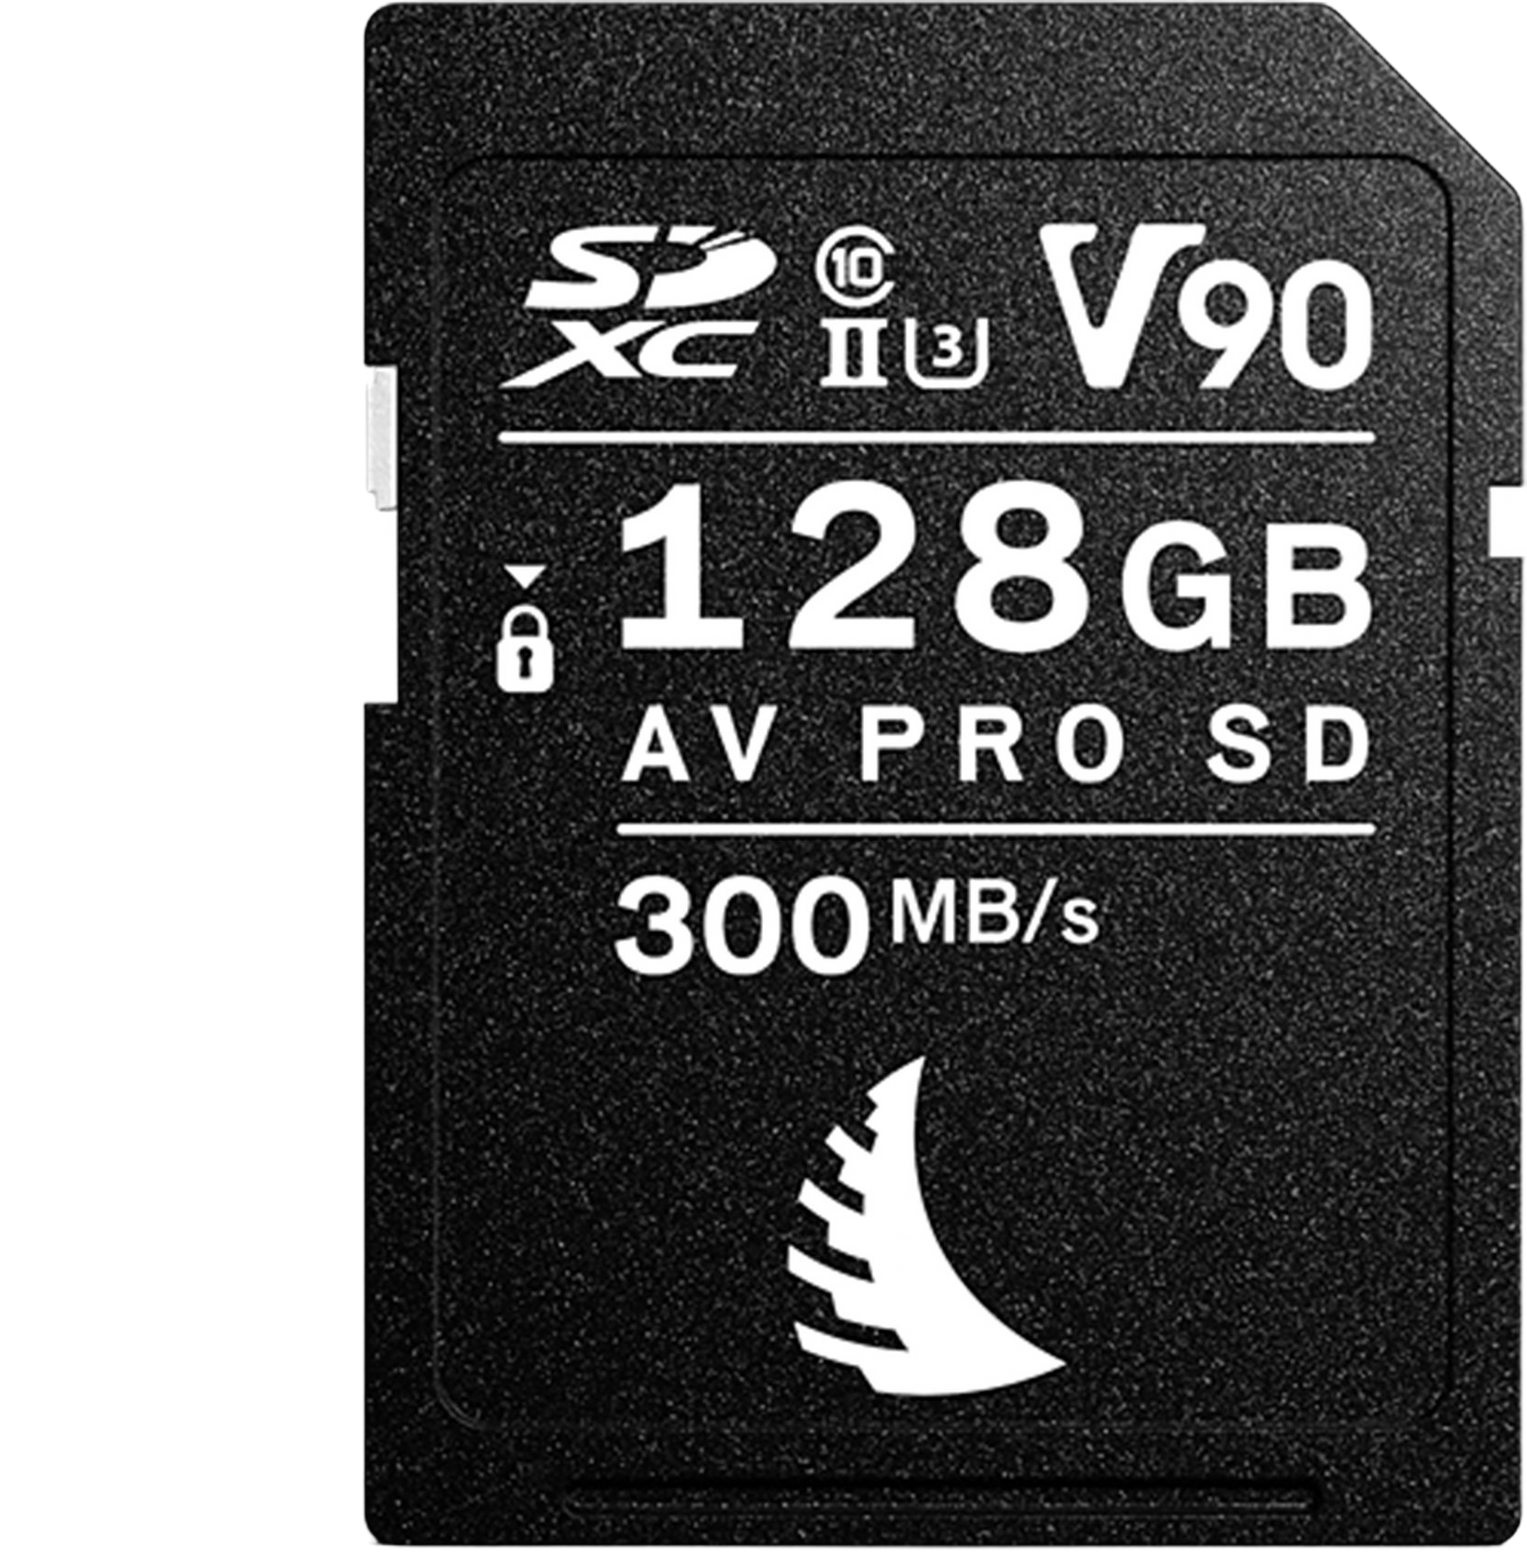 Angelbird 128GB AV PRO MK2 V90 SD Memory Card - Discontinued